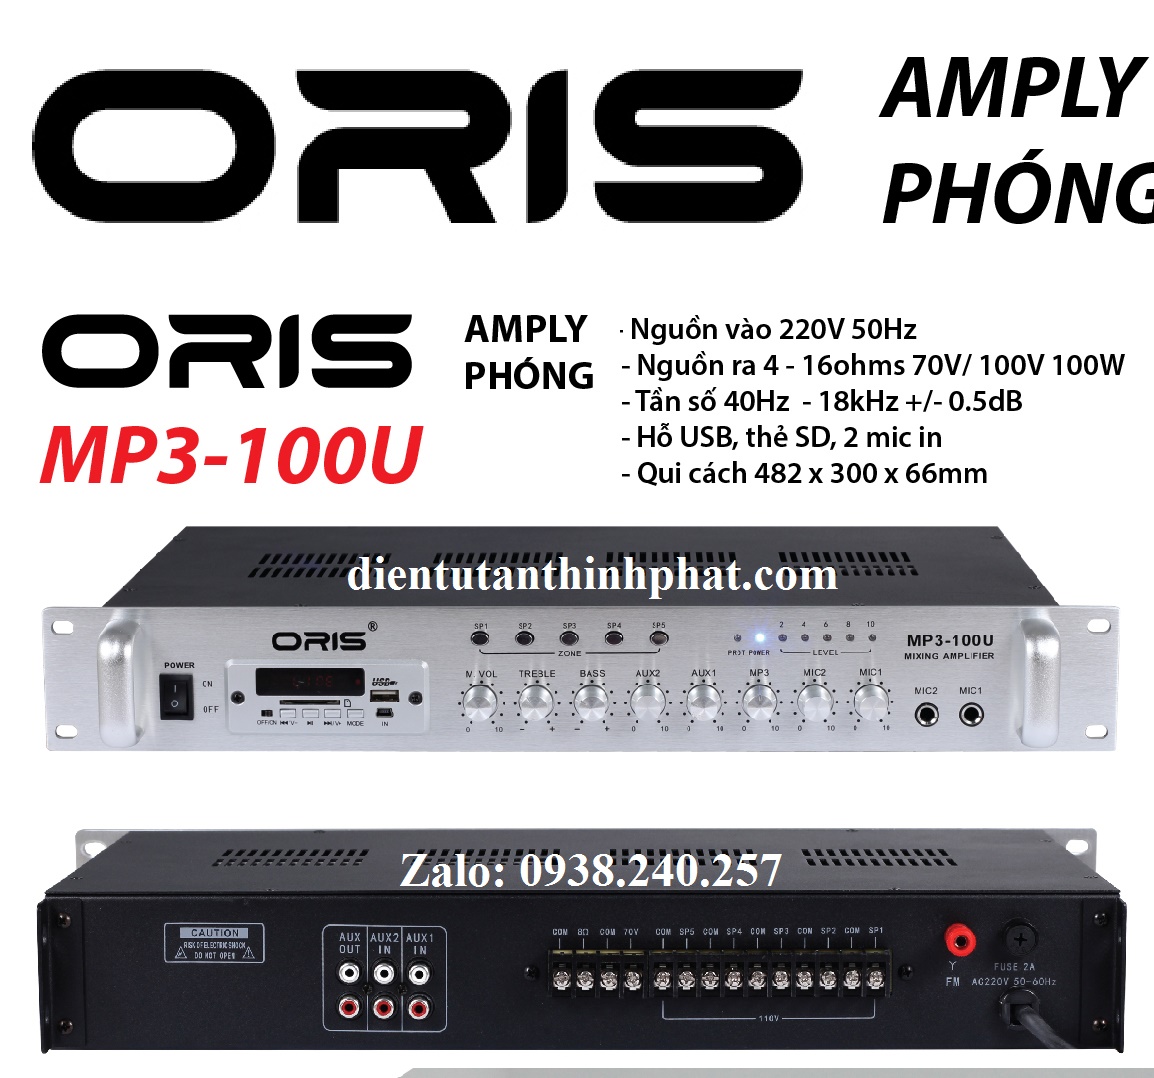 Amply phóng oris MP3-100U công suất 100w